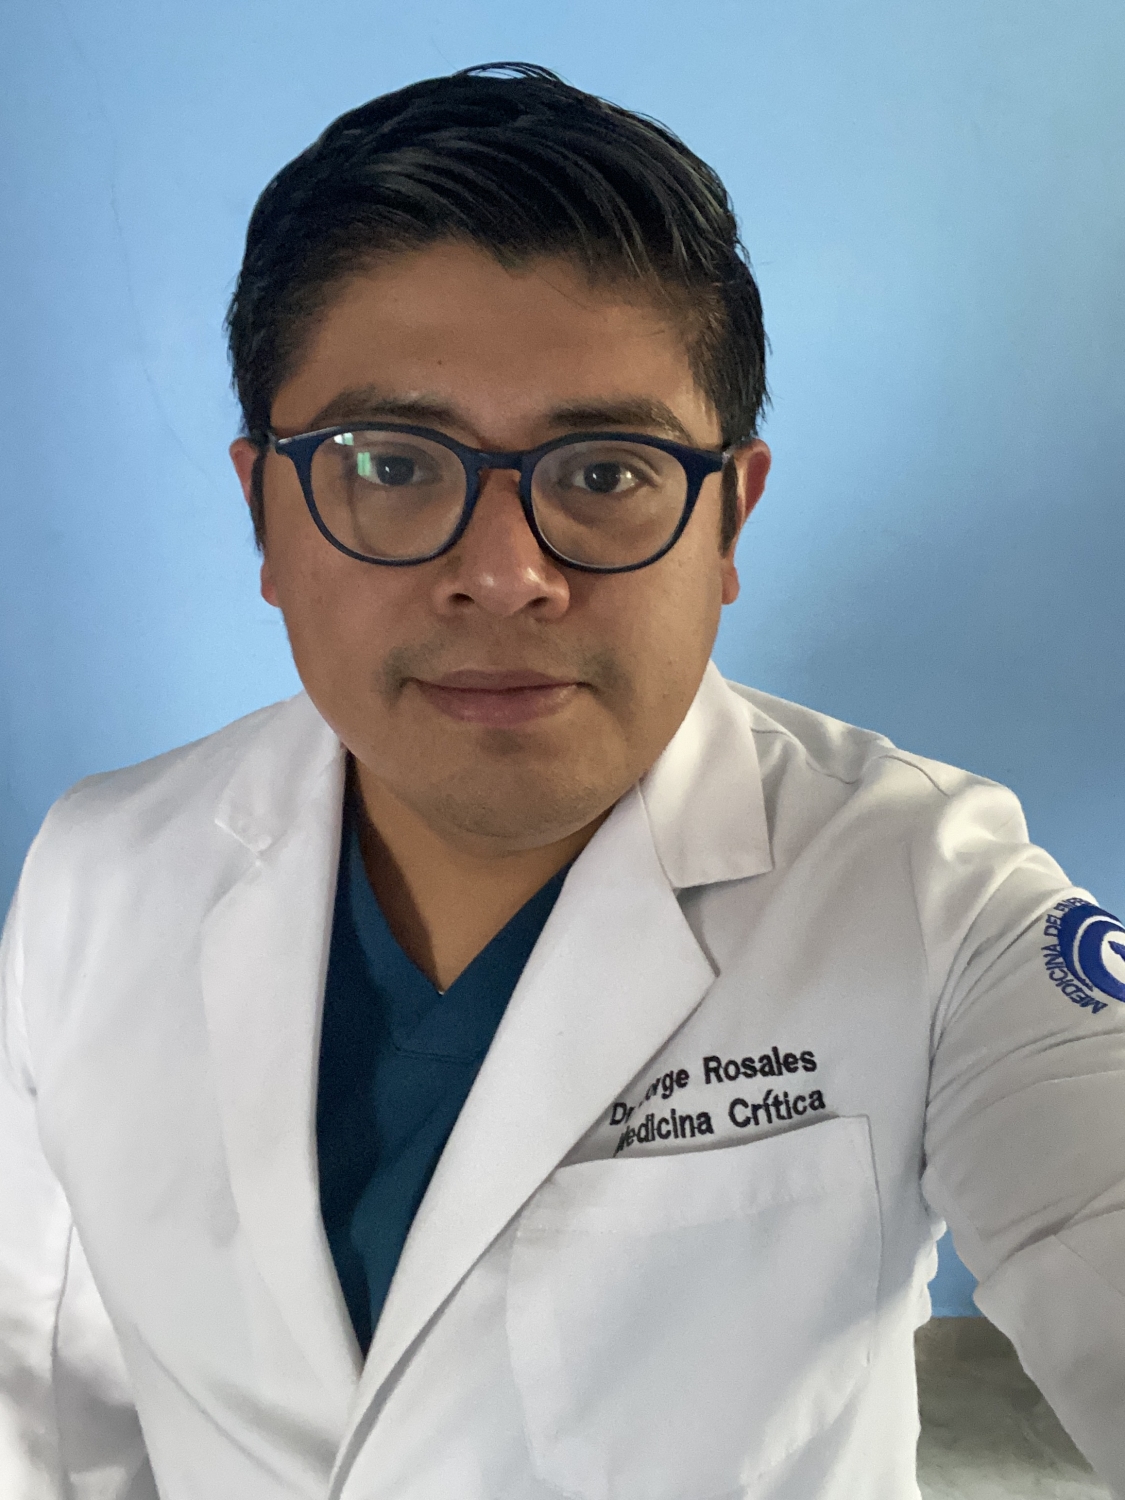 Doctor Especialista Jorge Roberto Rosales Leon